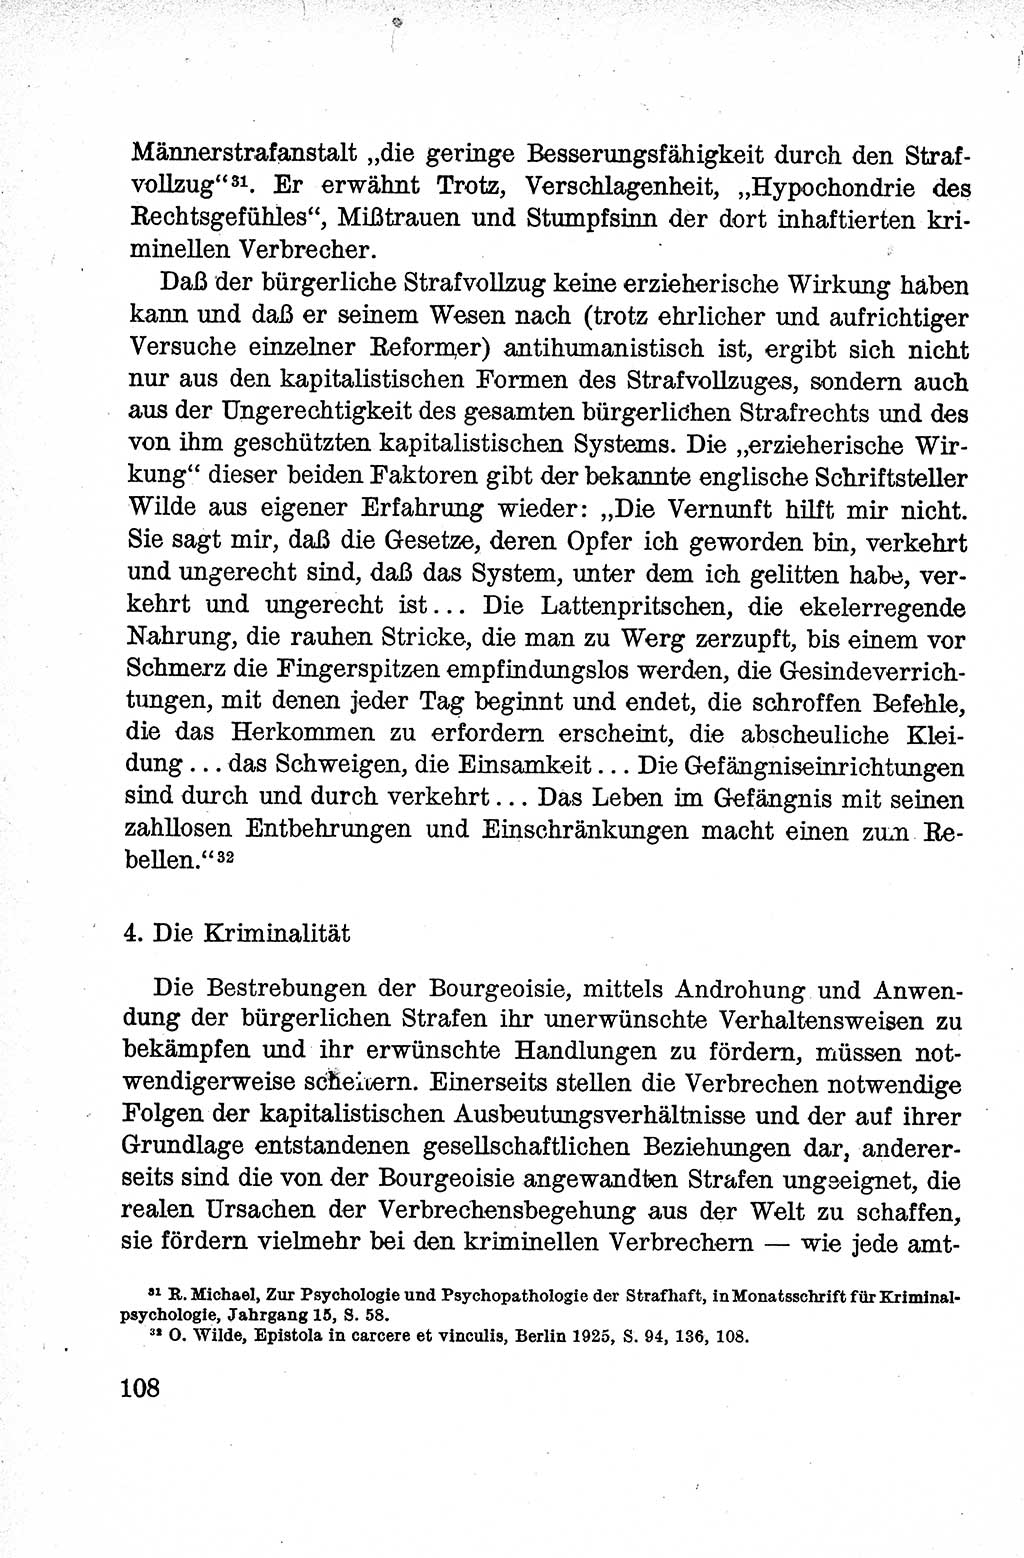 Lehrbuch des Strafrechts der Deutschen Demokratischen Republik (DDR), Allgemeiner Teil 1959, Seite 108 (Lb. Strafr. DDR AT 1959, S. 108)